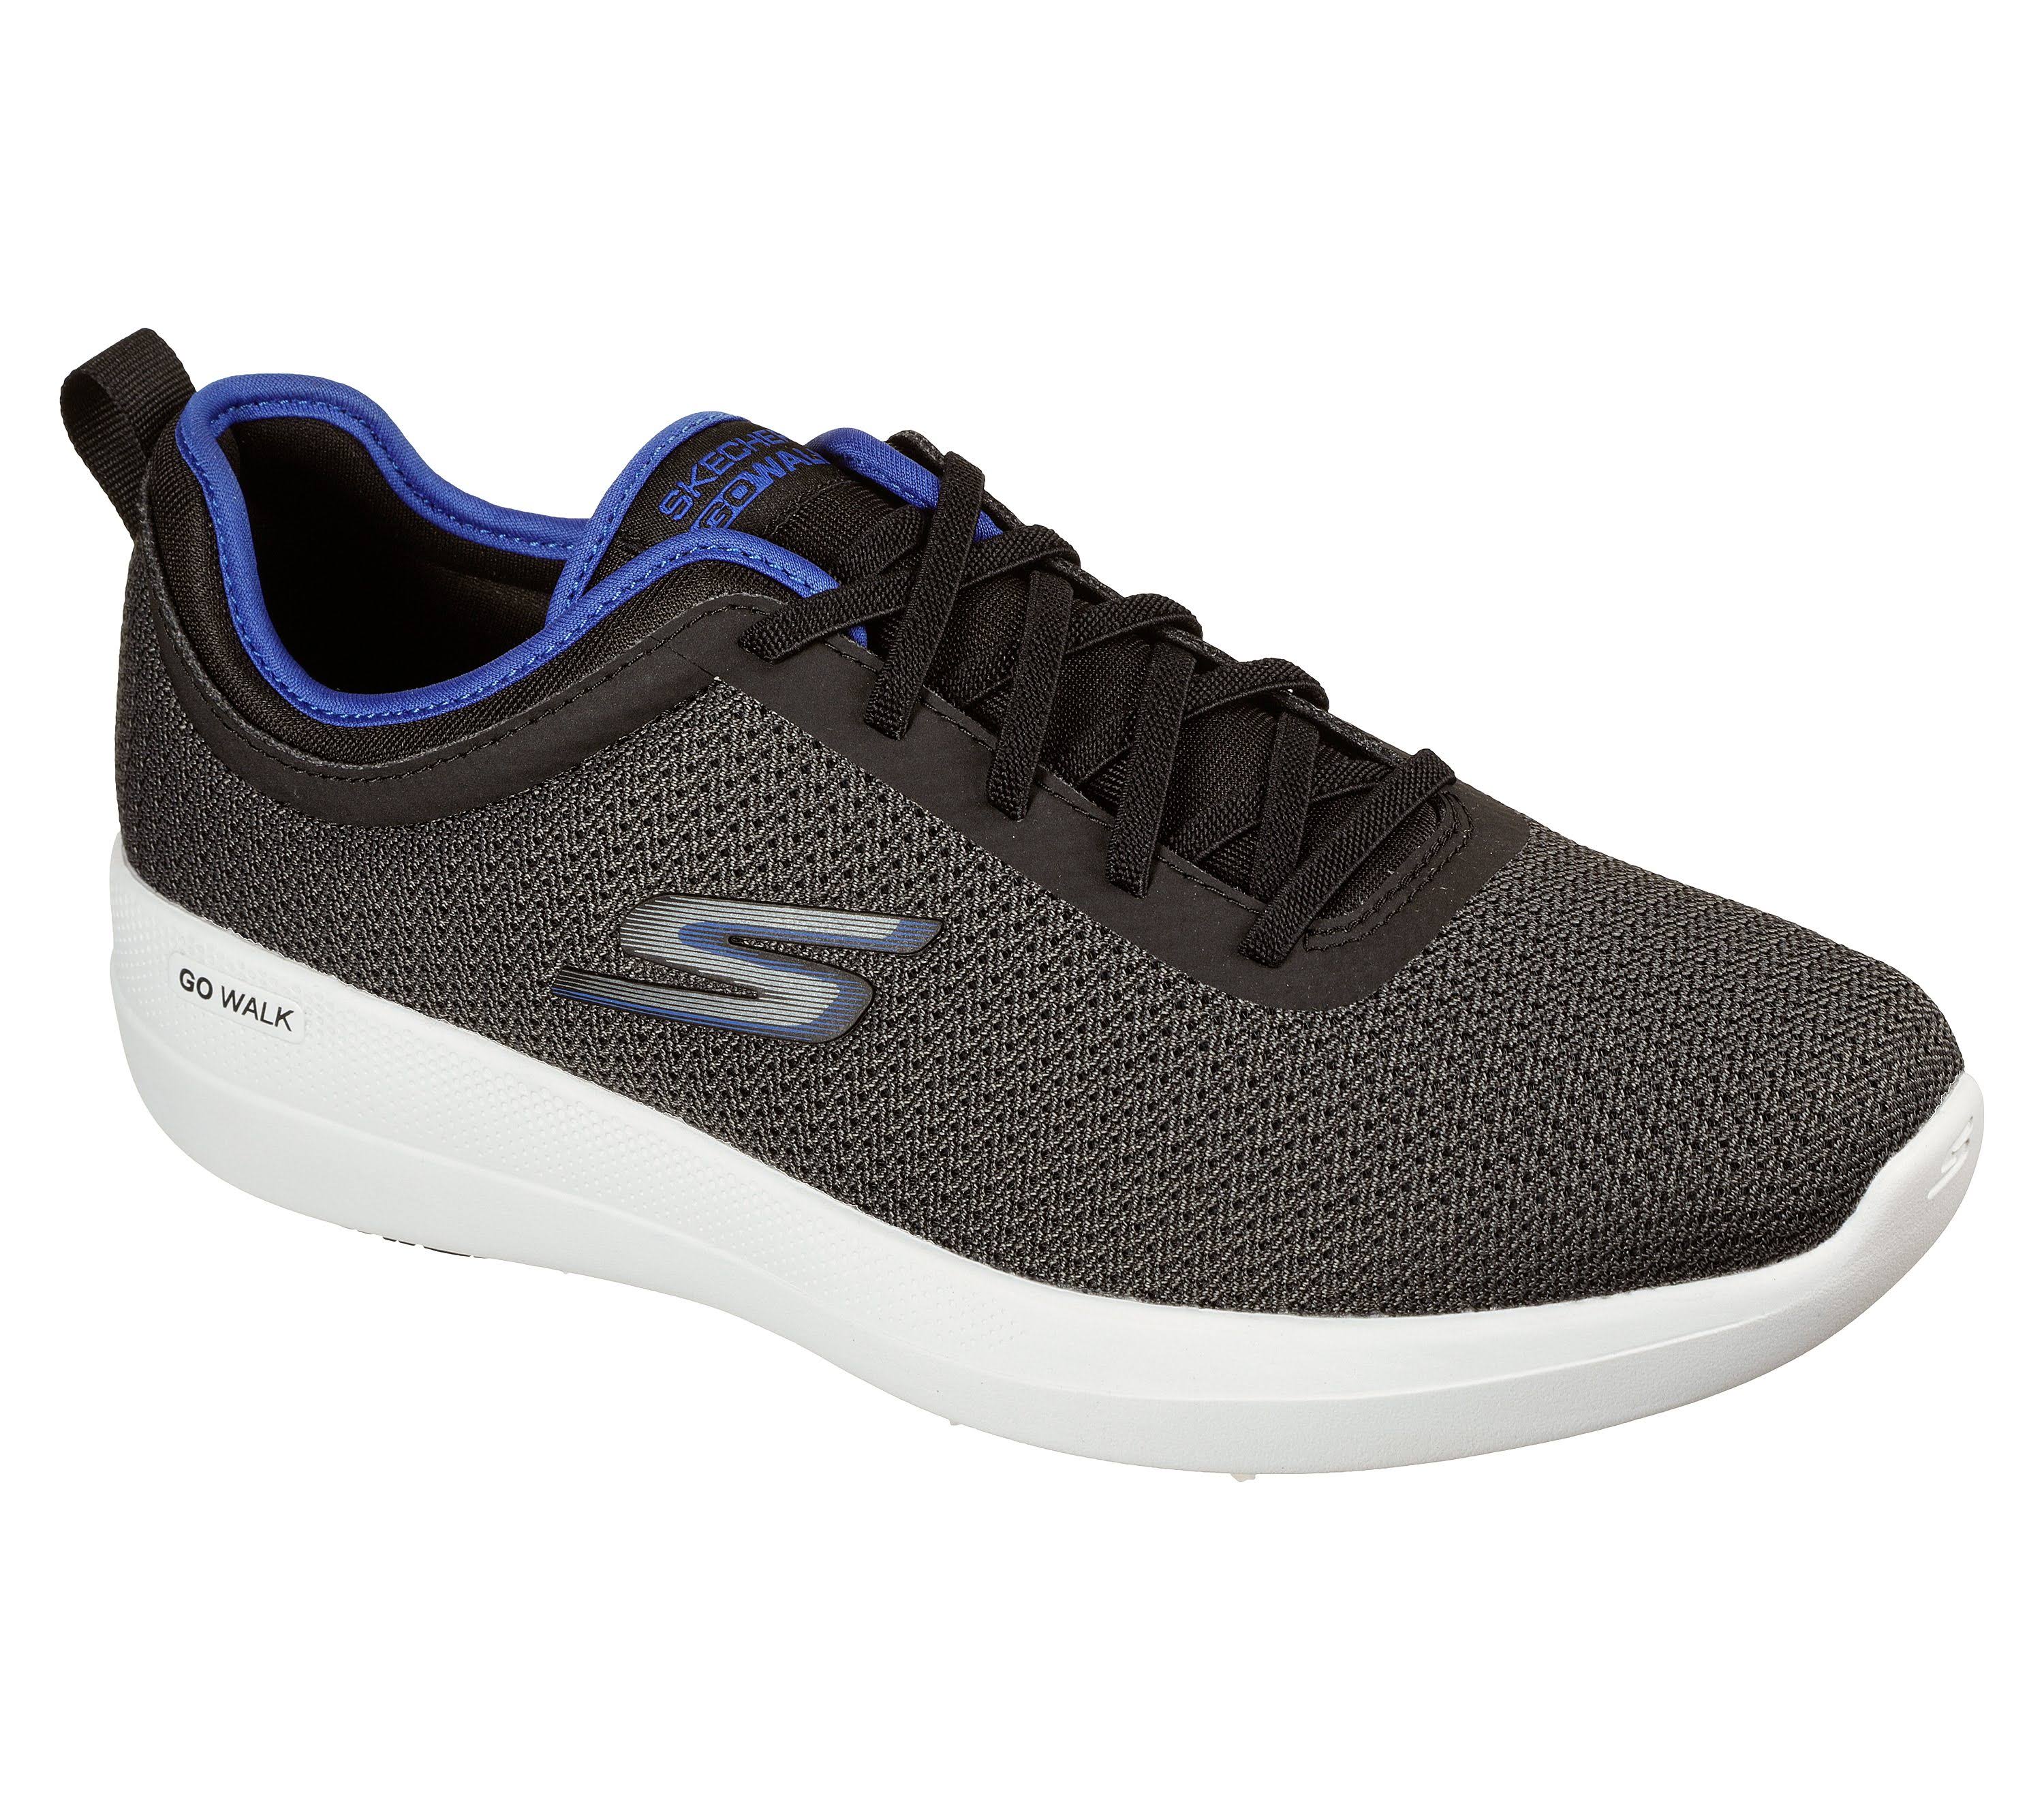 Skechers Men's GOwalk Stability - Progress Walking Shoes, Black/Blue, 9 ...